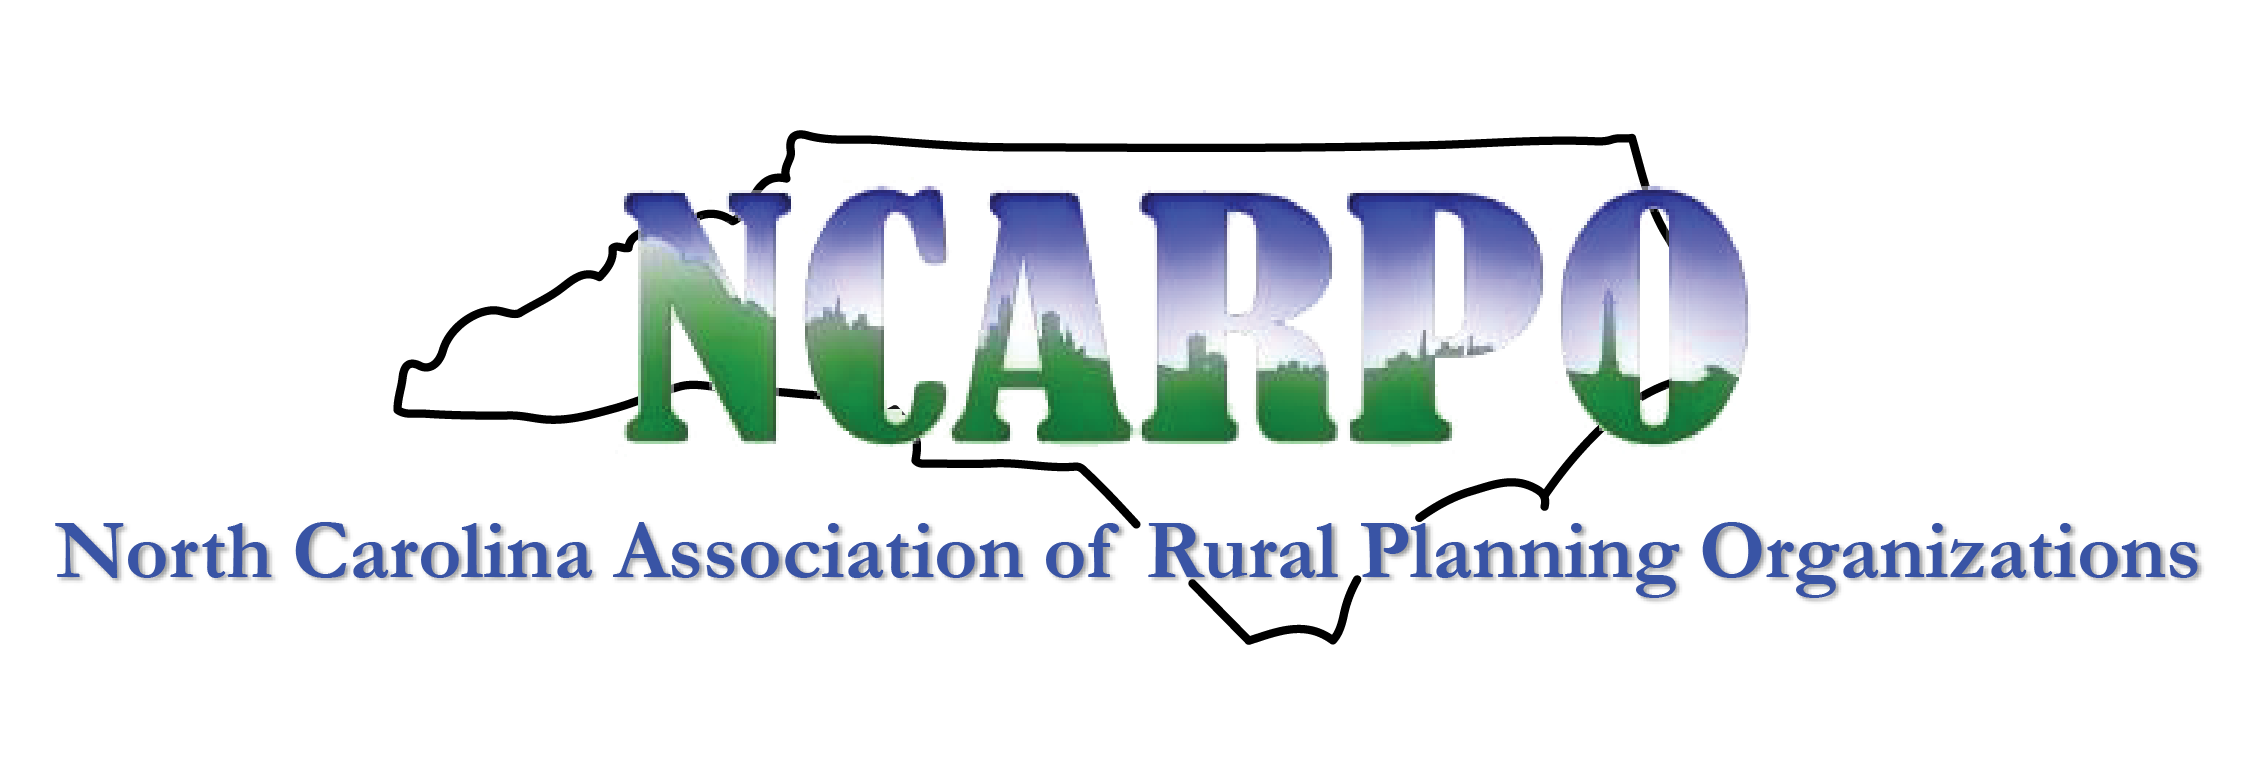 North Carolina Association of Rural Planning Organizations